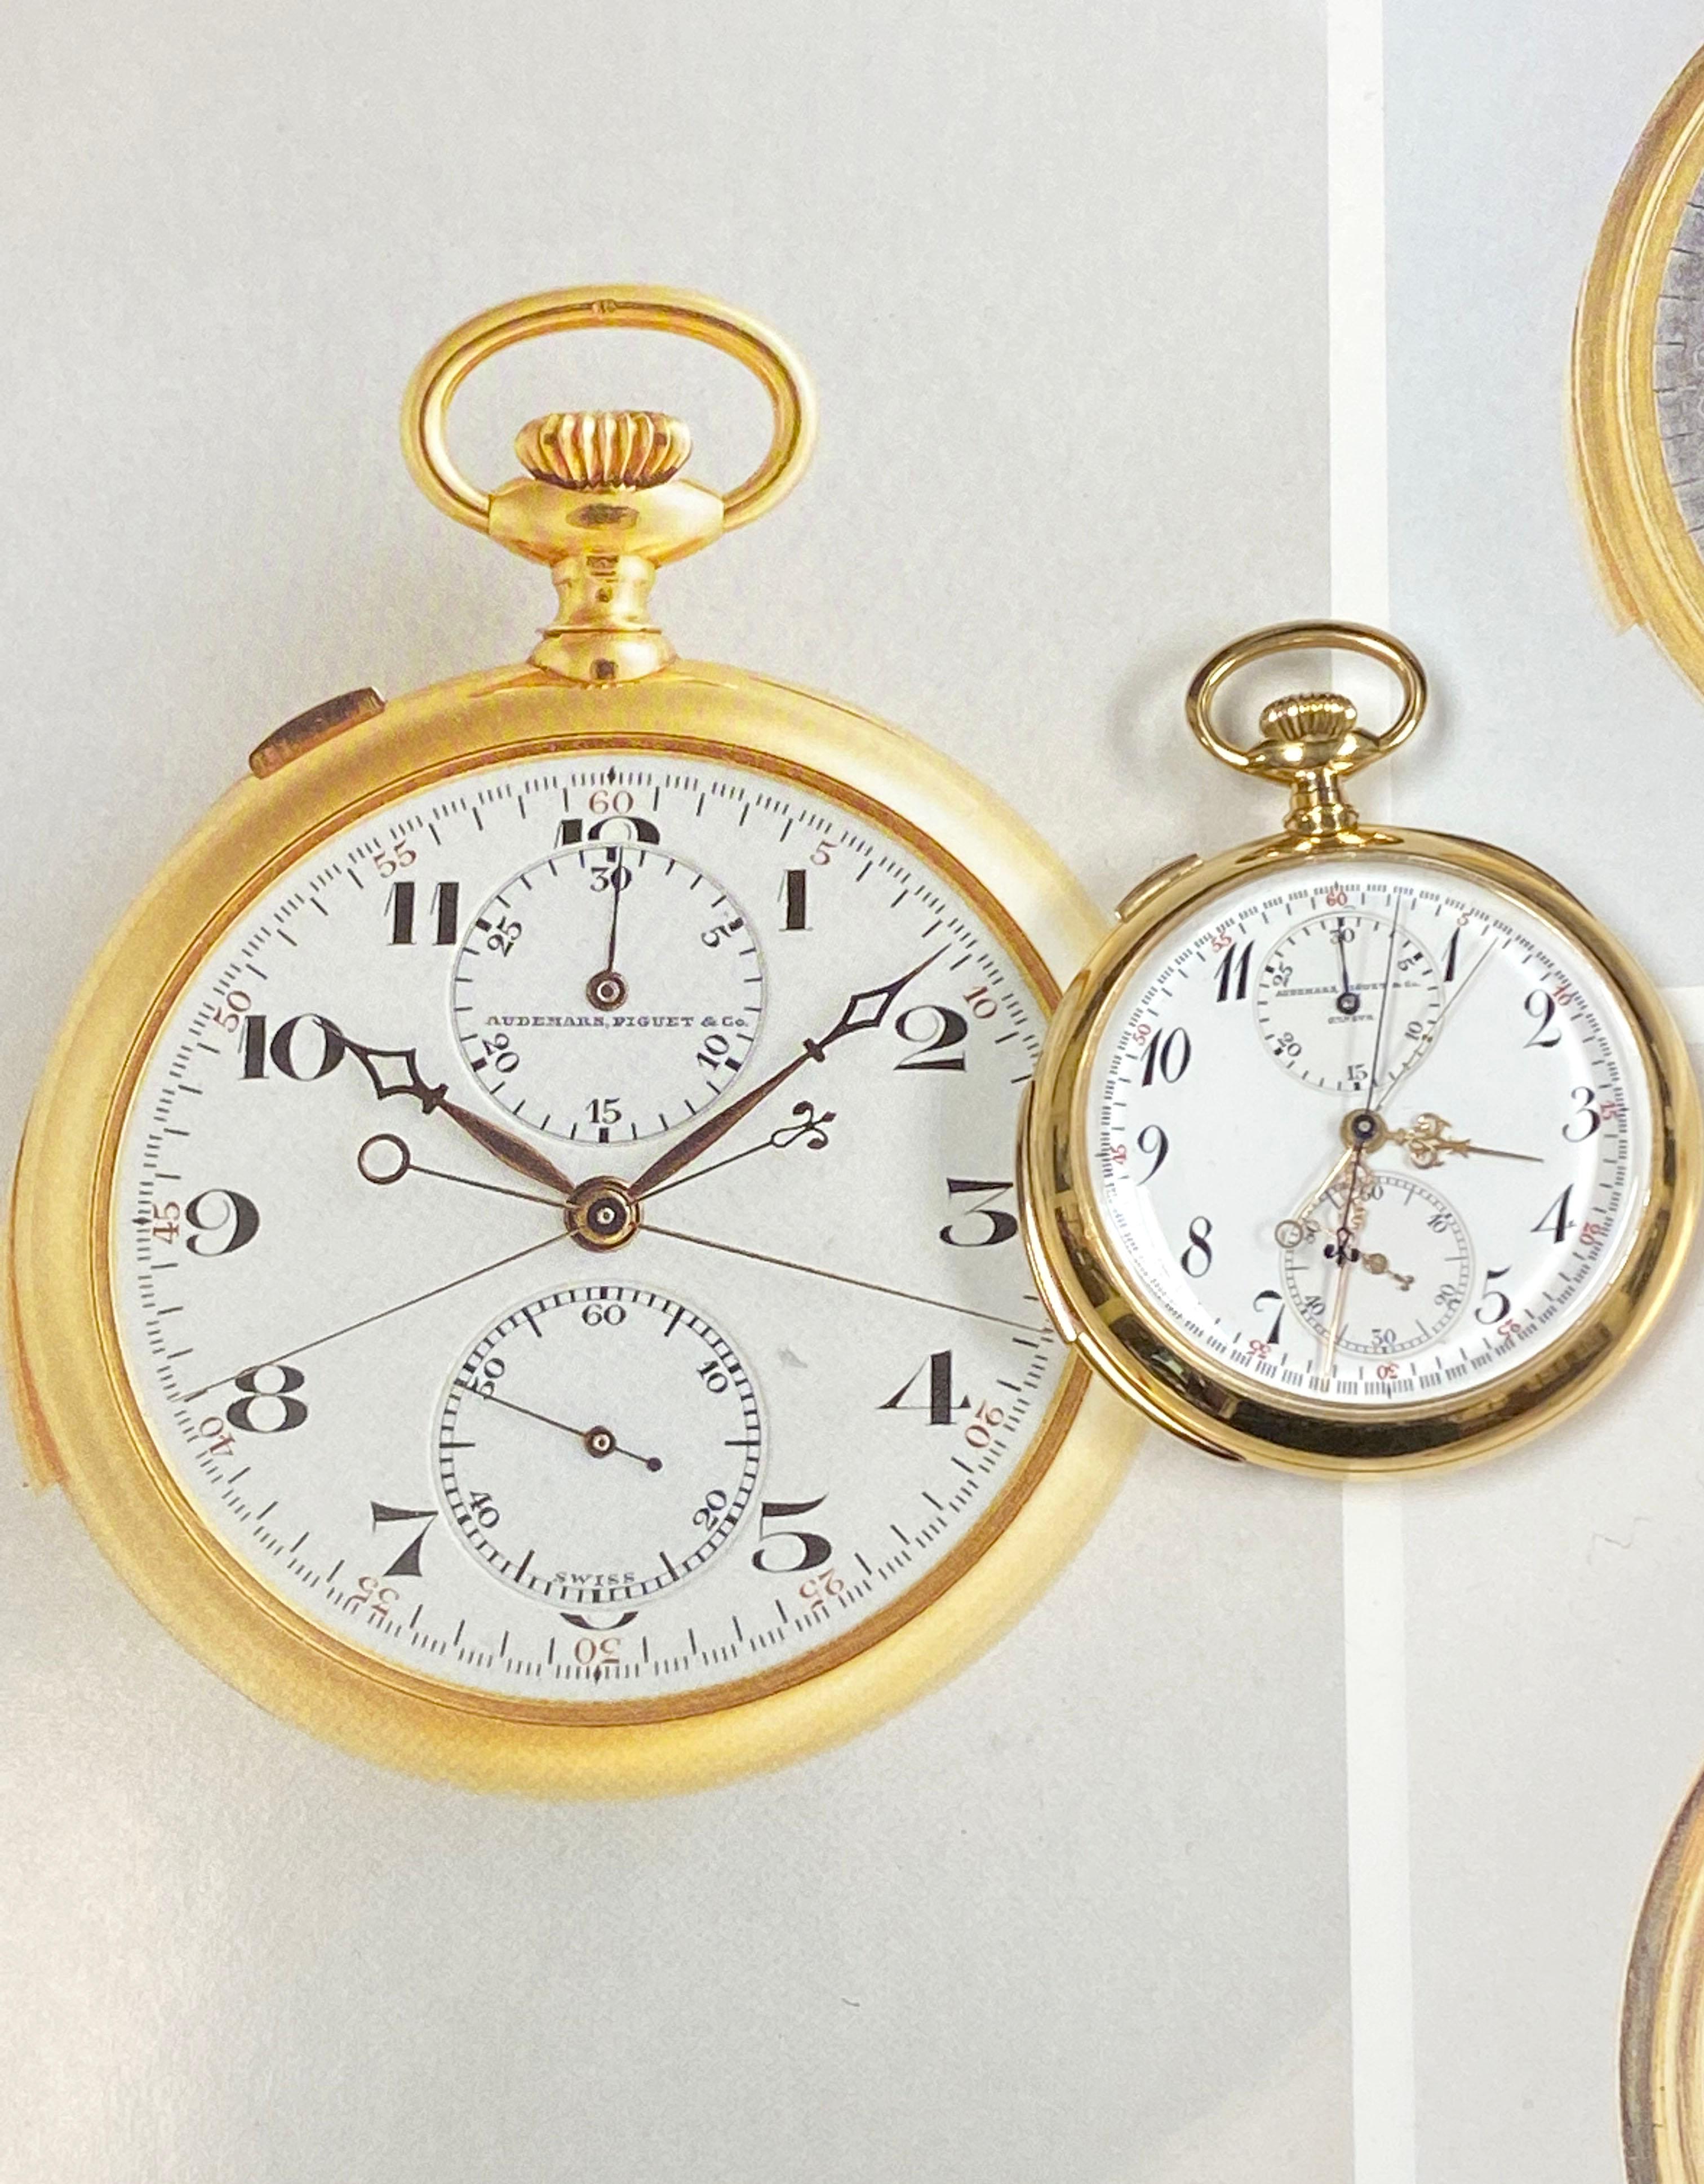 Audemars Piguet Minutenrepetition Chronograph Taschenuhr Historische Präsentation 3